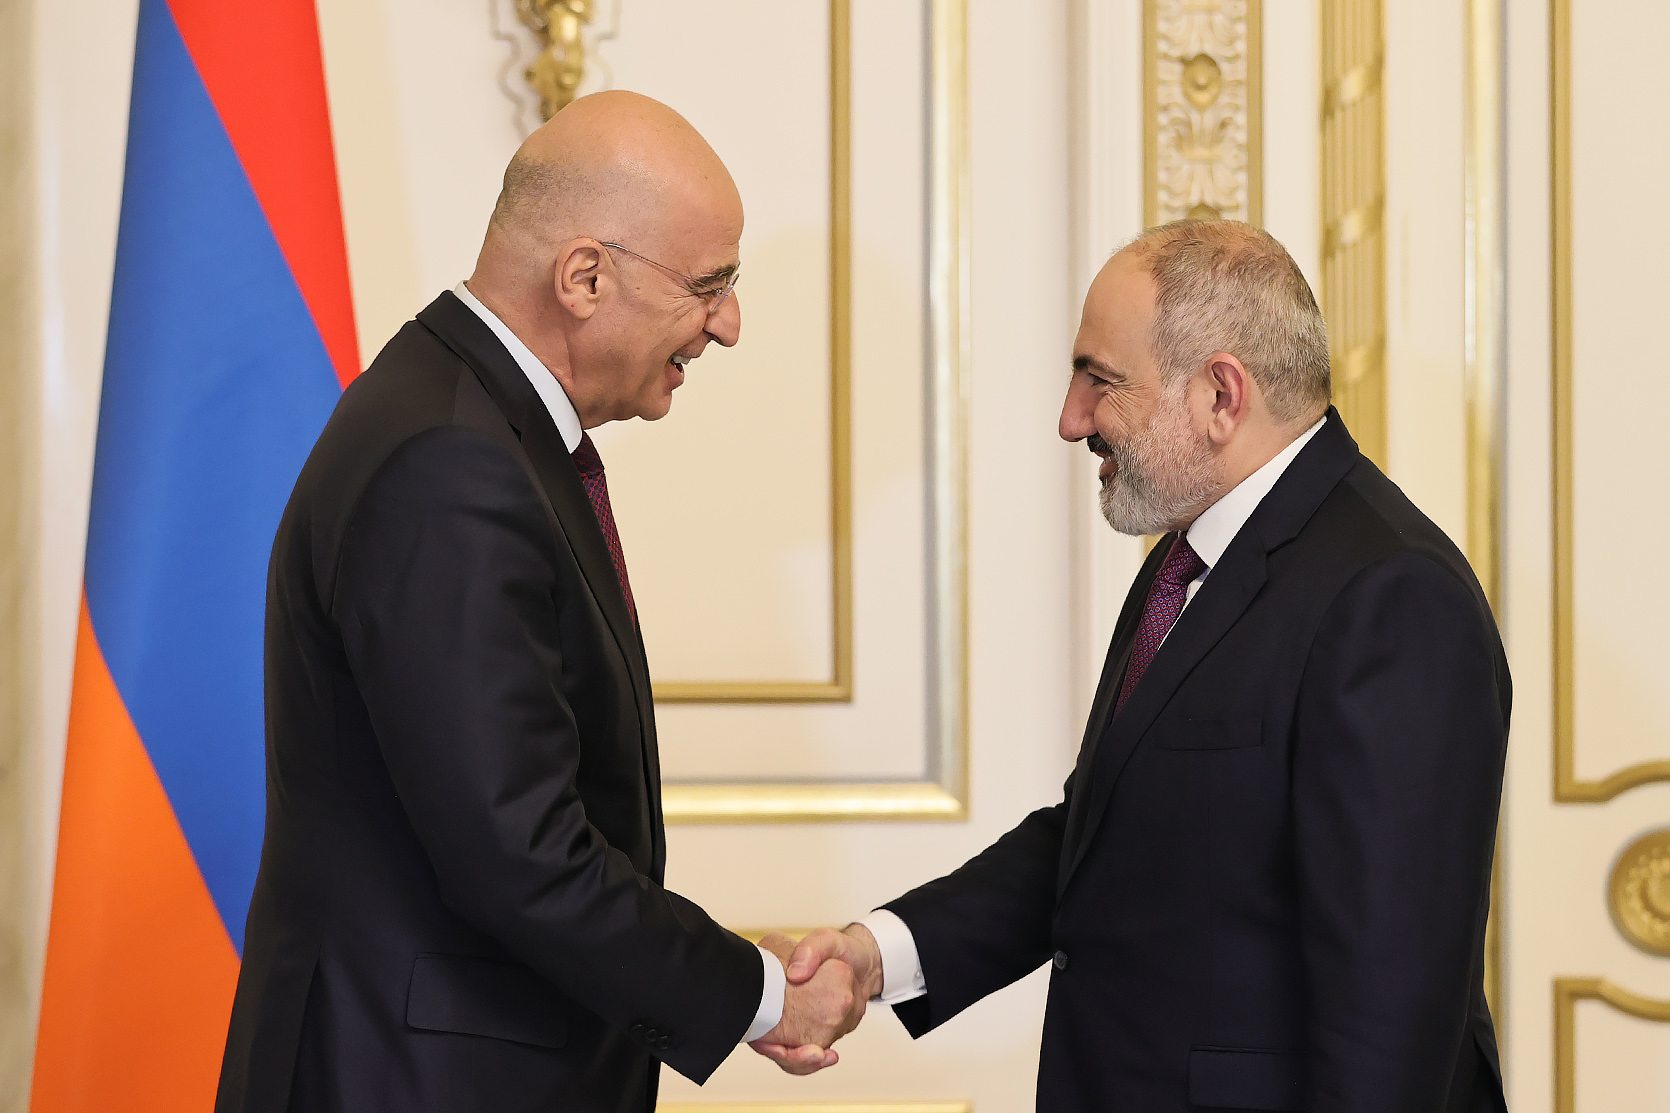 Греция видит себя страной, которая будет помогать Армении: Дендиас - Пашиняну